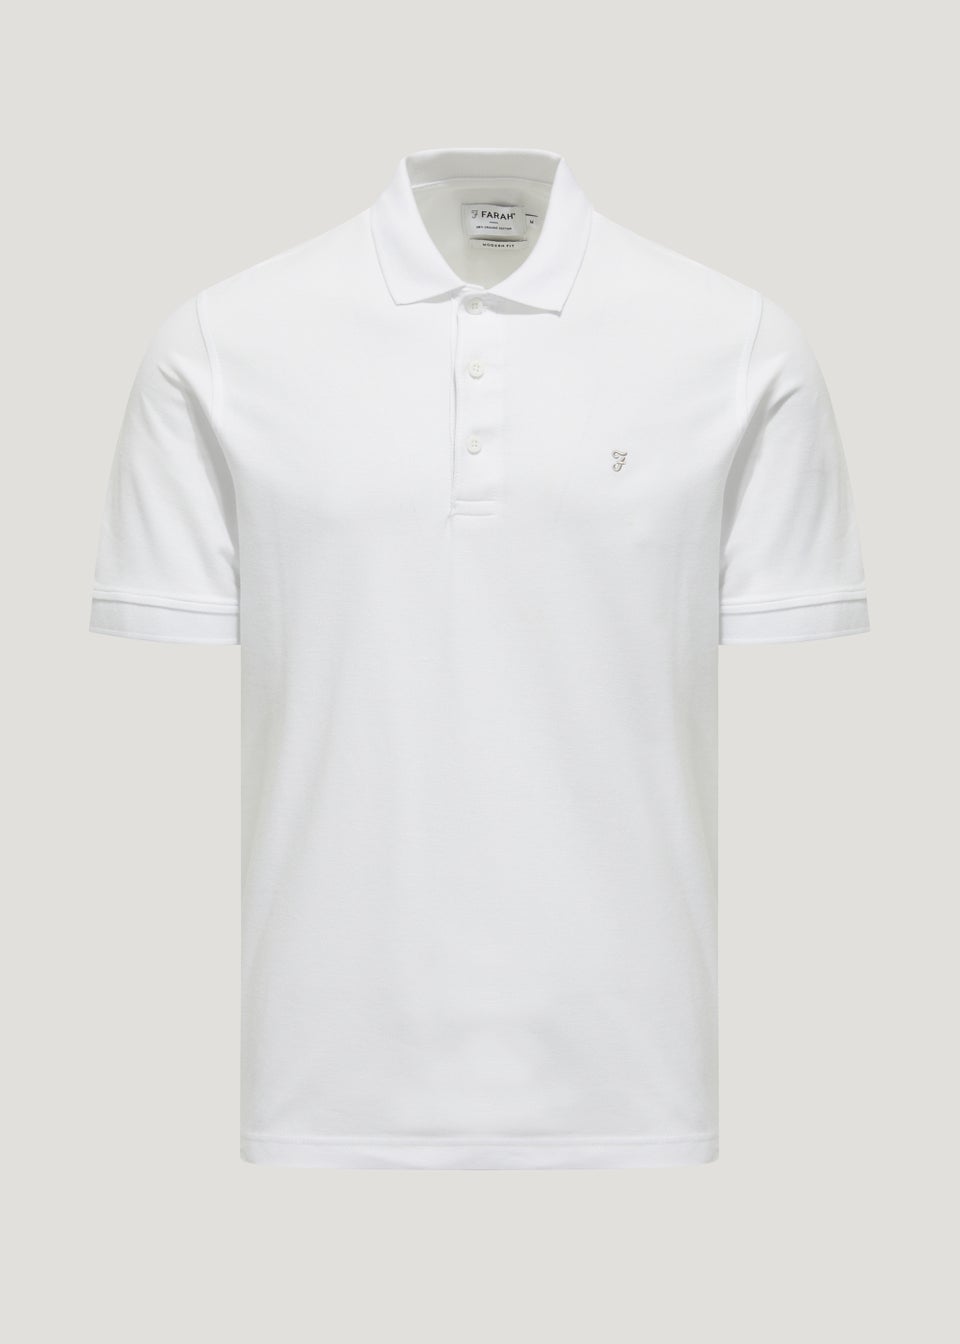 Farah Cove White Polo Shirt - Matalan